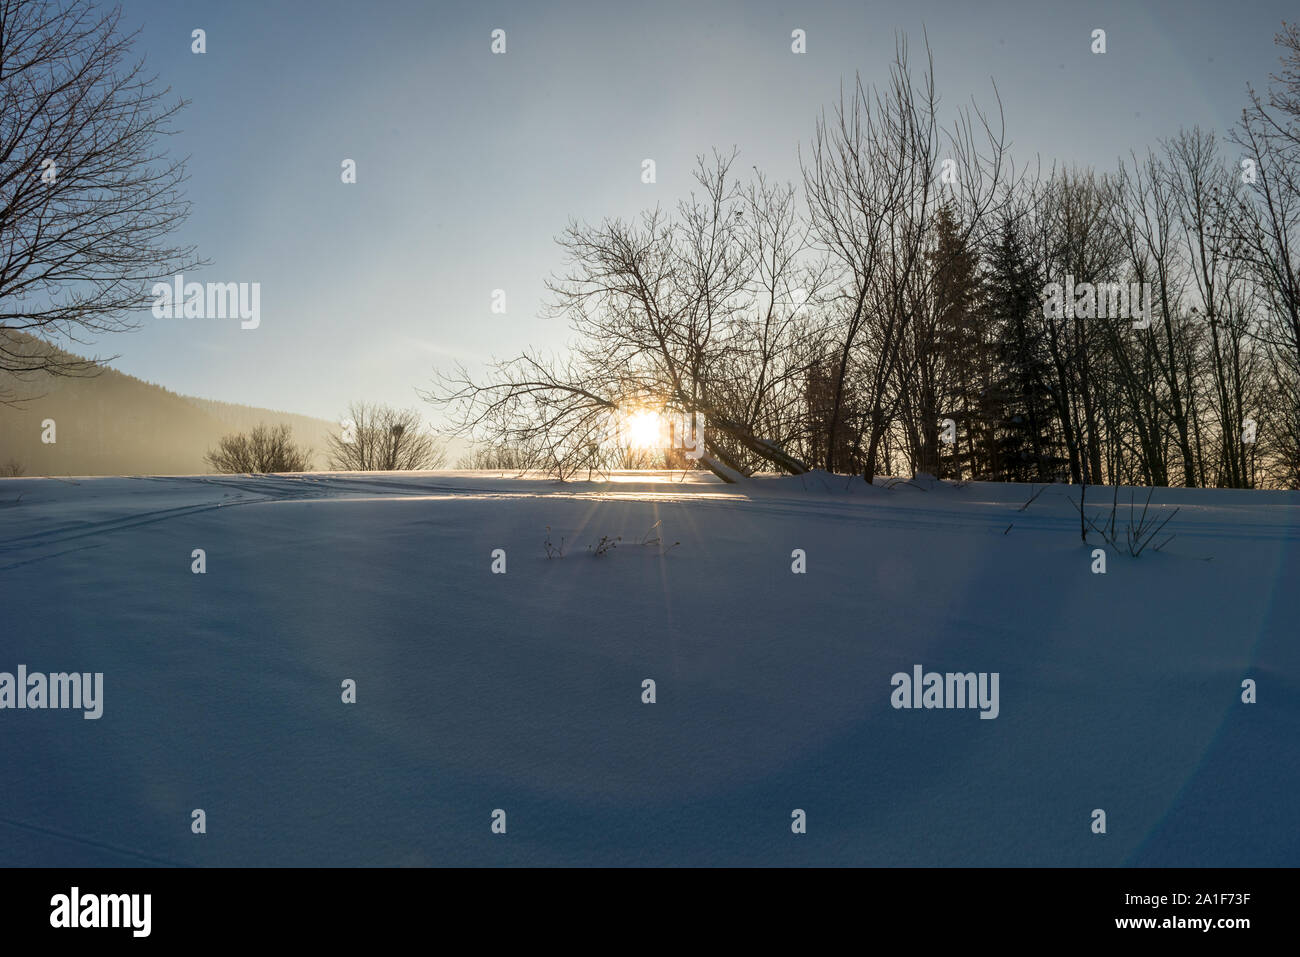 Wintermorgen scenry wih Schnee, Bäume, Sonne und klarem Himmel auf Butoranka oben Dorf in Moravskoslezske Ostravice Beskiden in der Tschechischen Republik Stockfoto